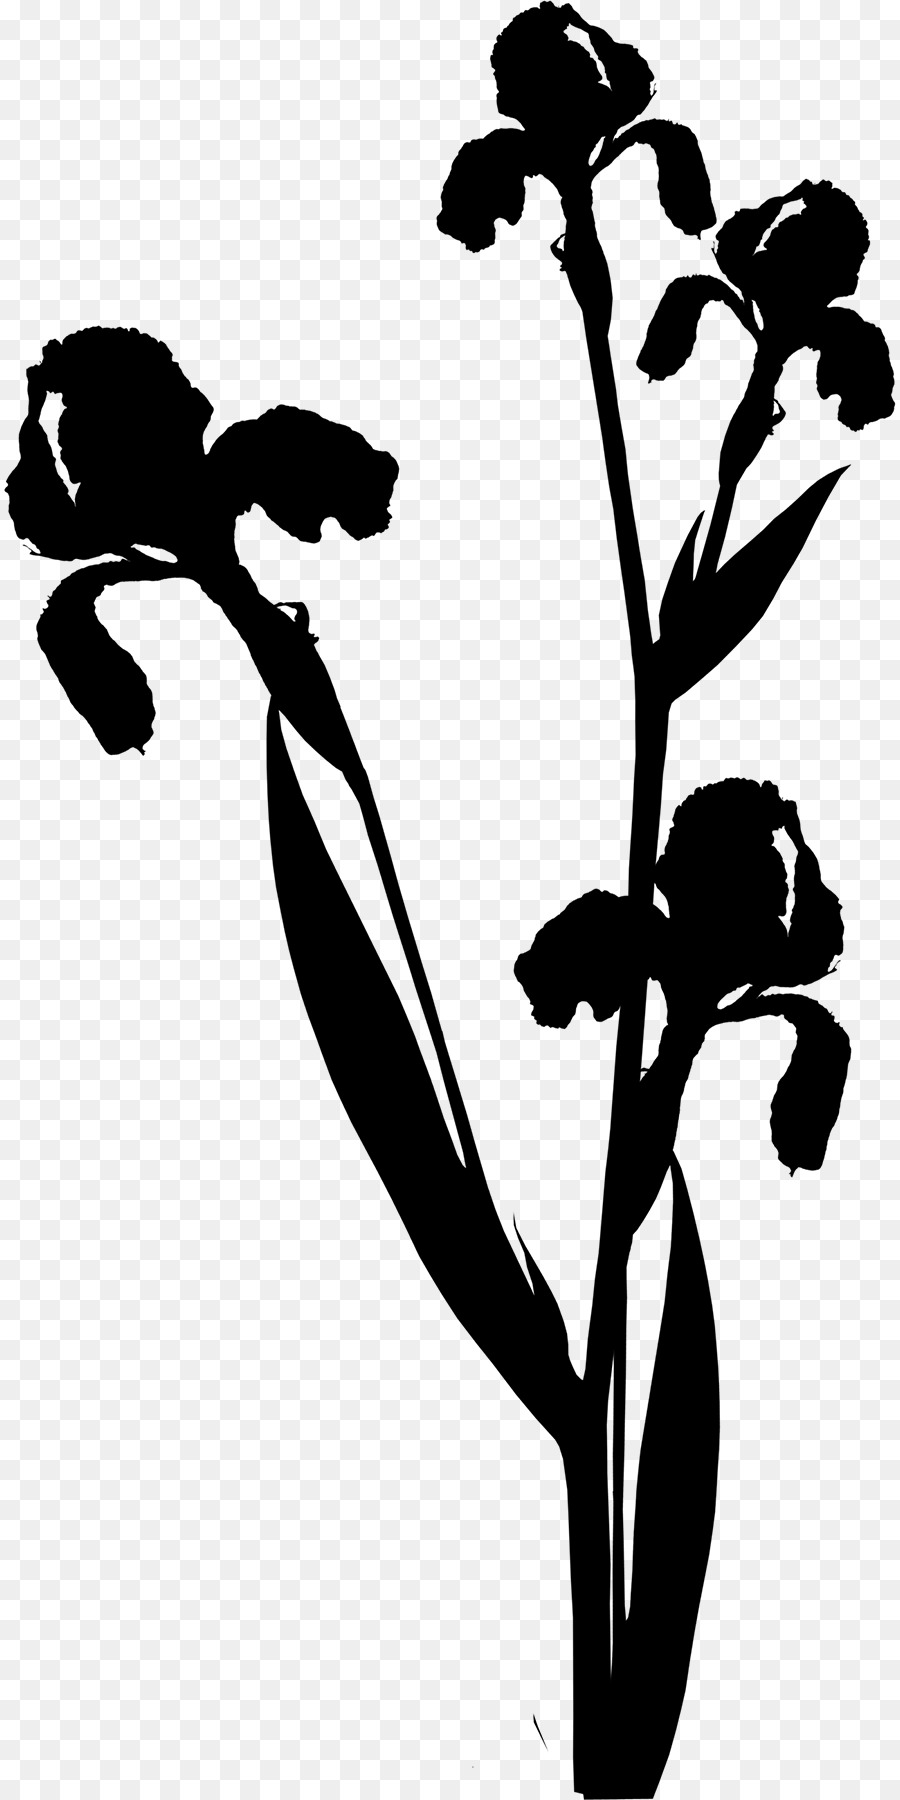 Clip art Black & White   M Fiore Foglia Stelo vegetale - 